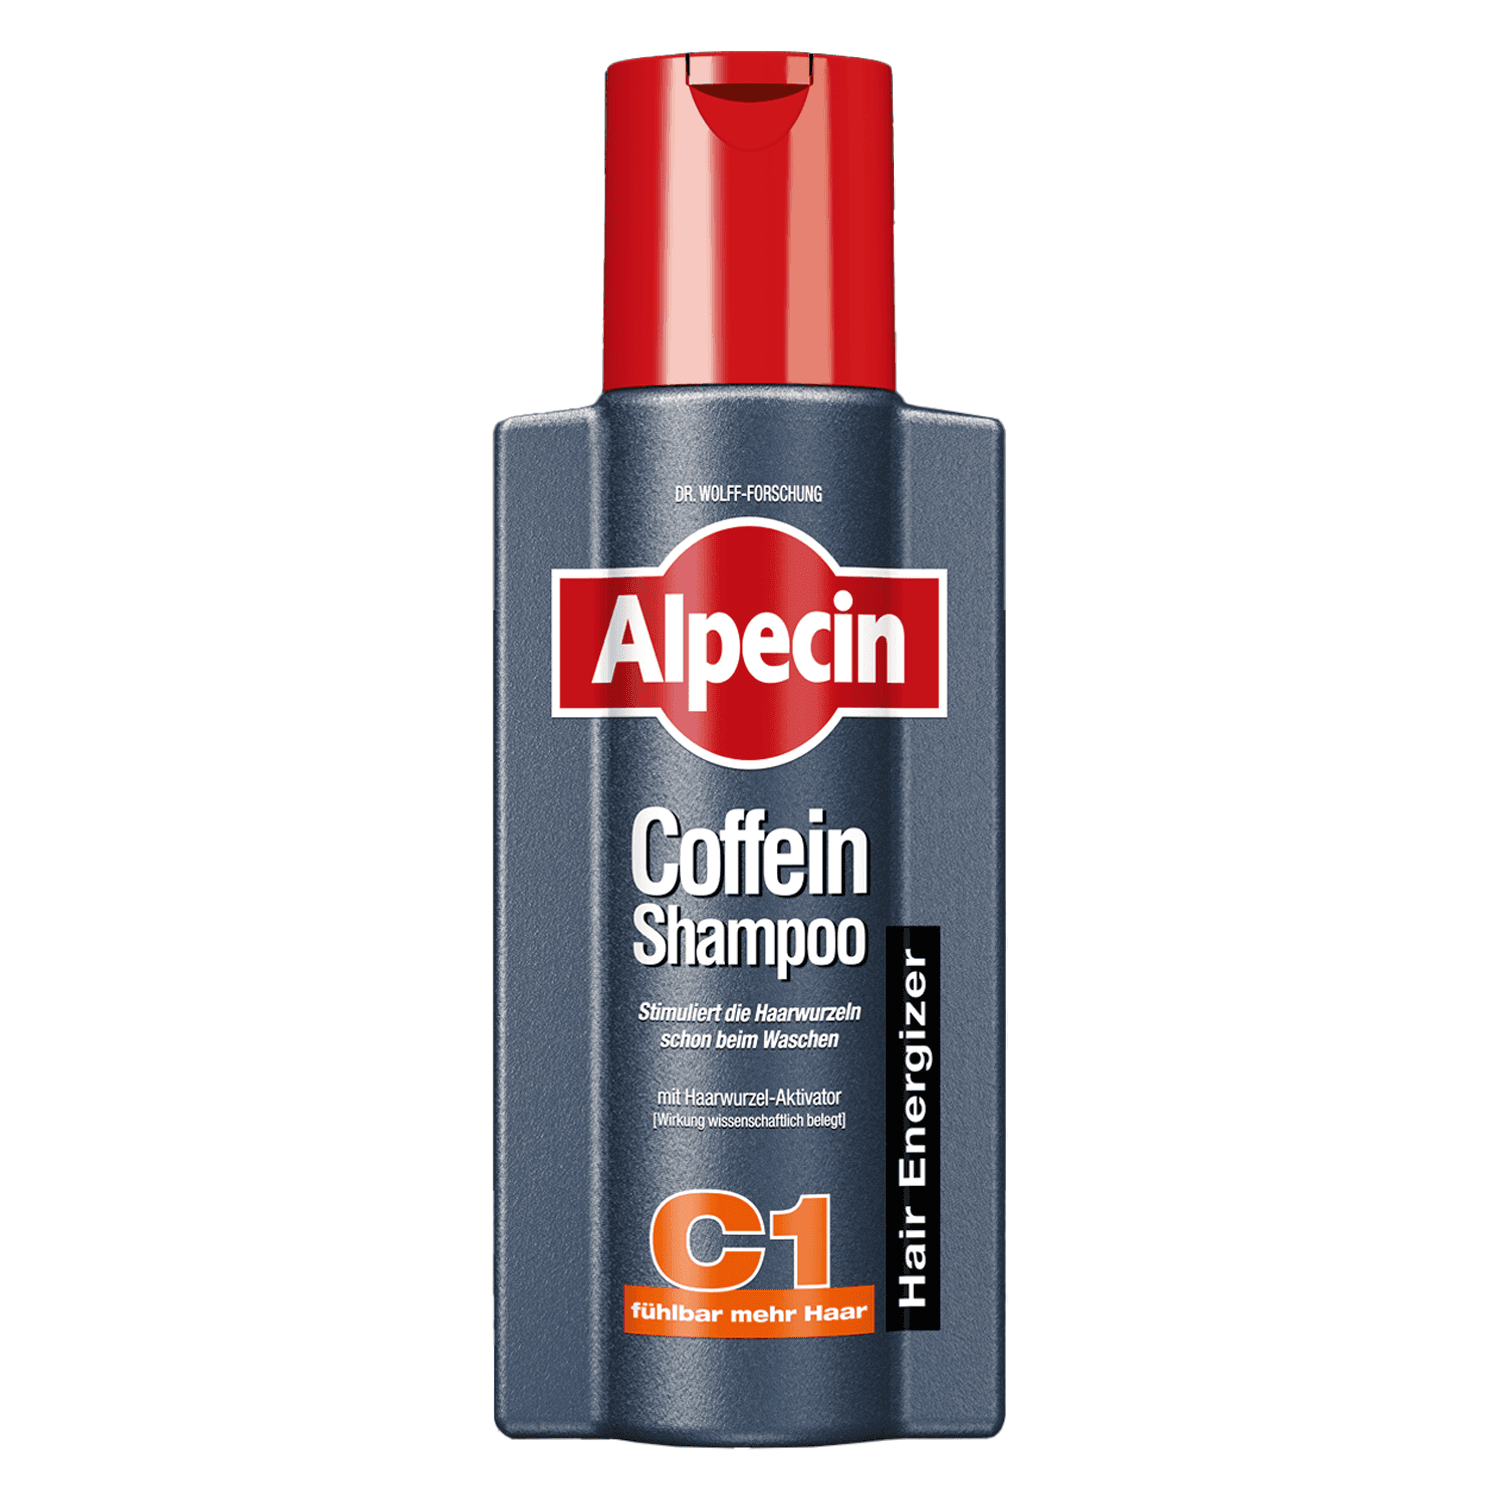 Alpecin - Coffein-Shampoo C1